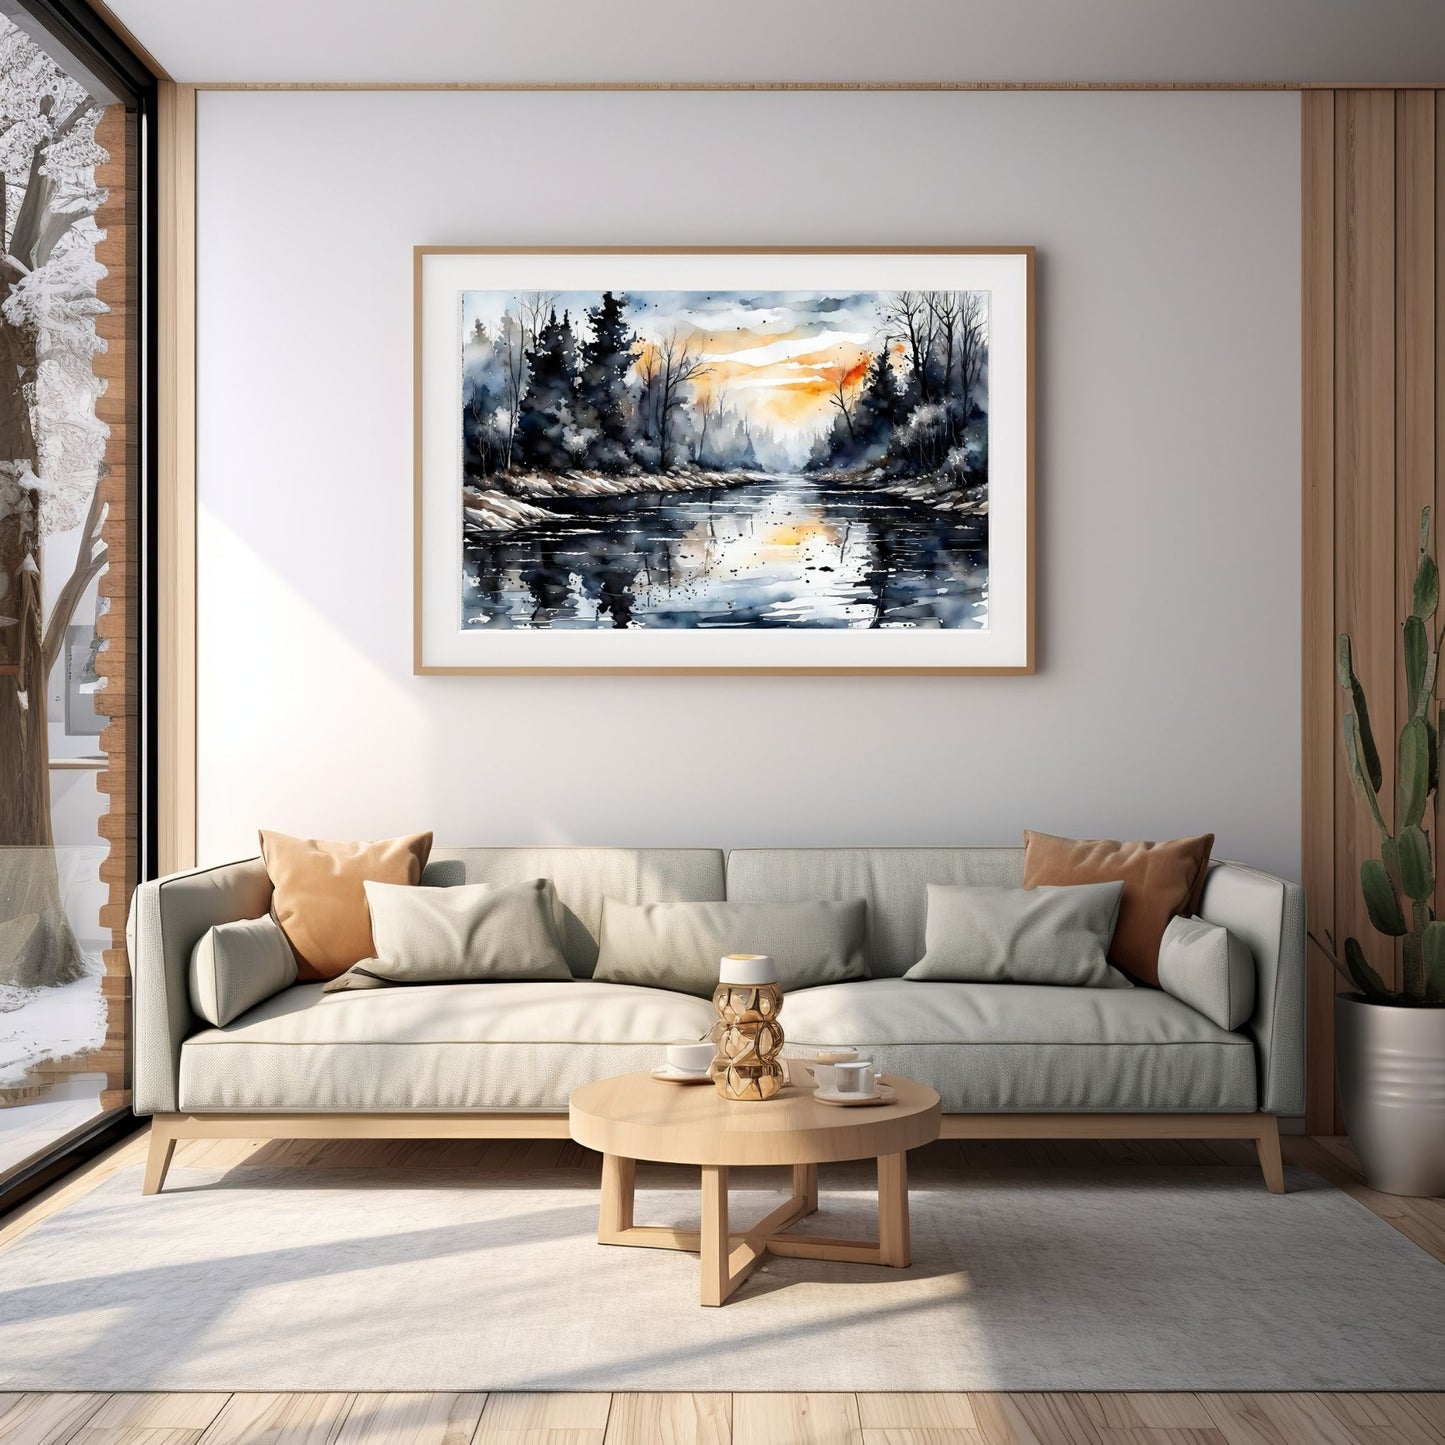 Digitalt kunstmaleri i akvarell som fanger essensen av vinterscenene med et sjarmerende landskap der snøfnugg danser i luften, og en himmel badet i kvelsdssol. Illustrasjonsfoto som viser motivet som plakat i en ramme som henger over en sofa.